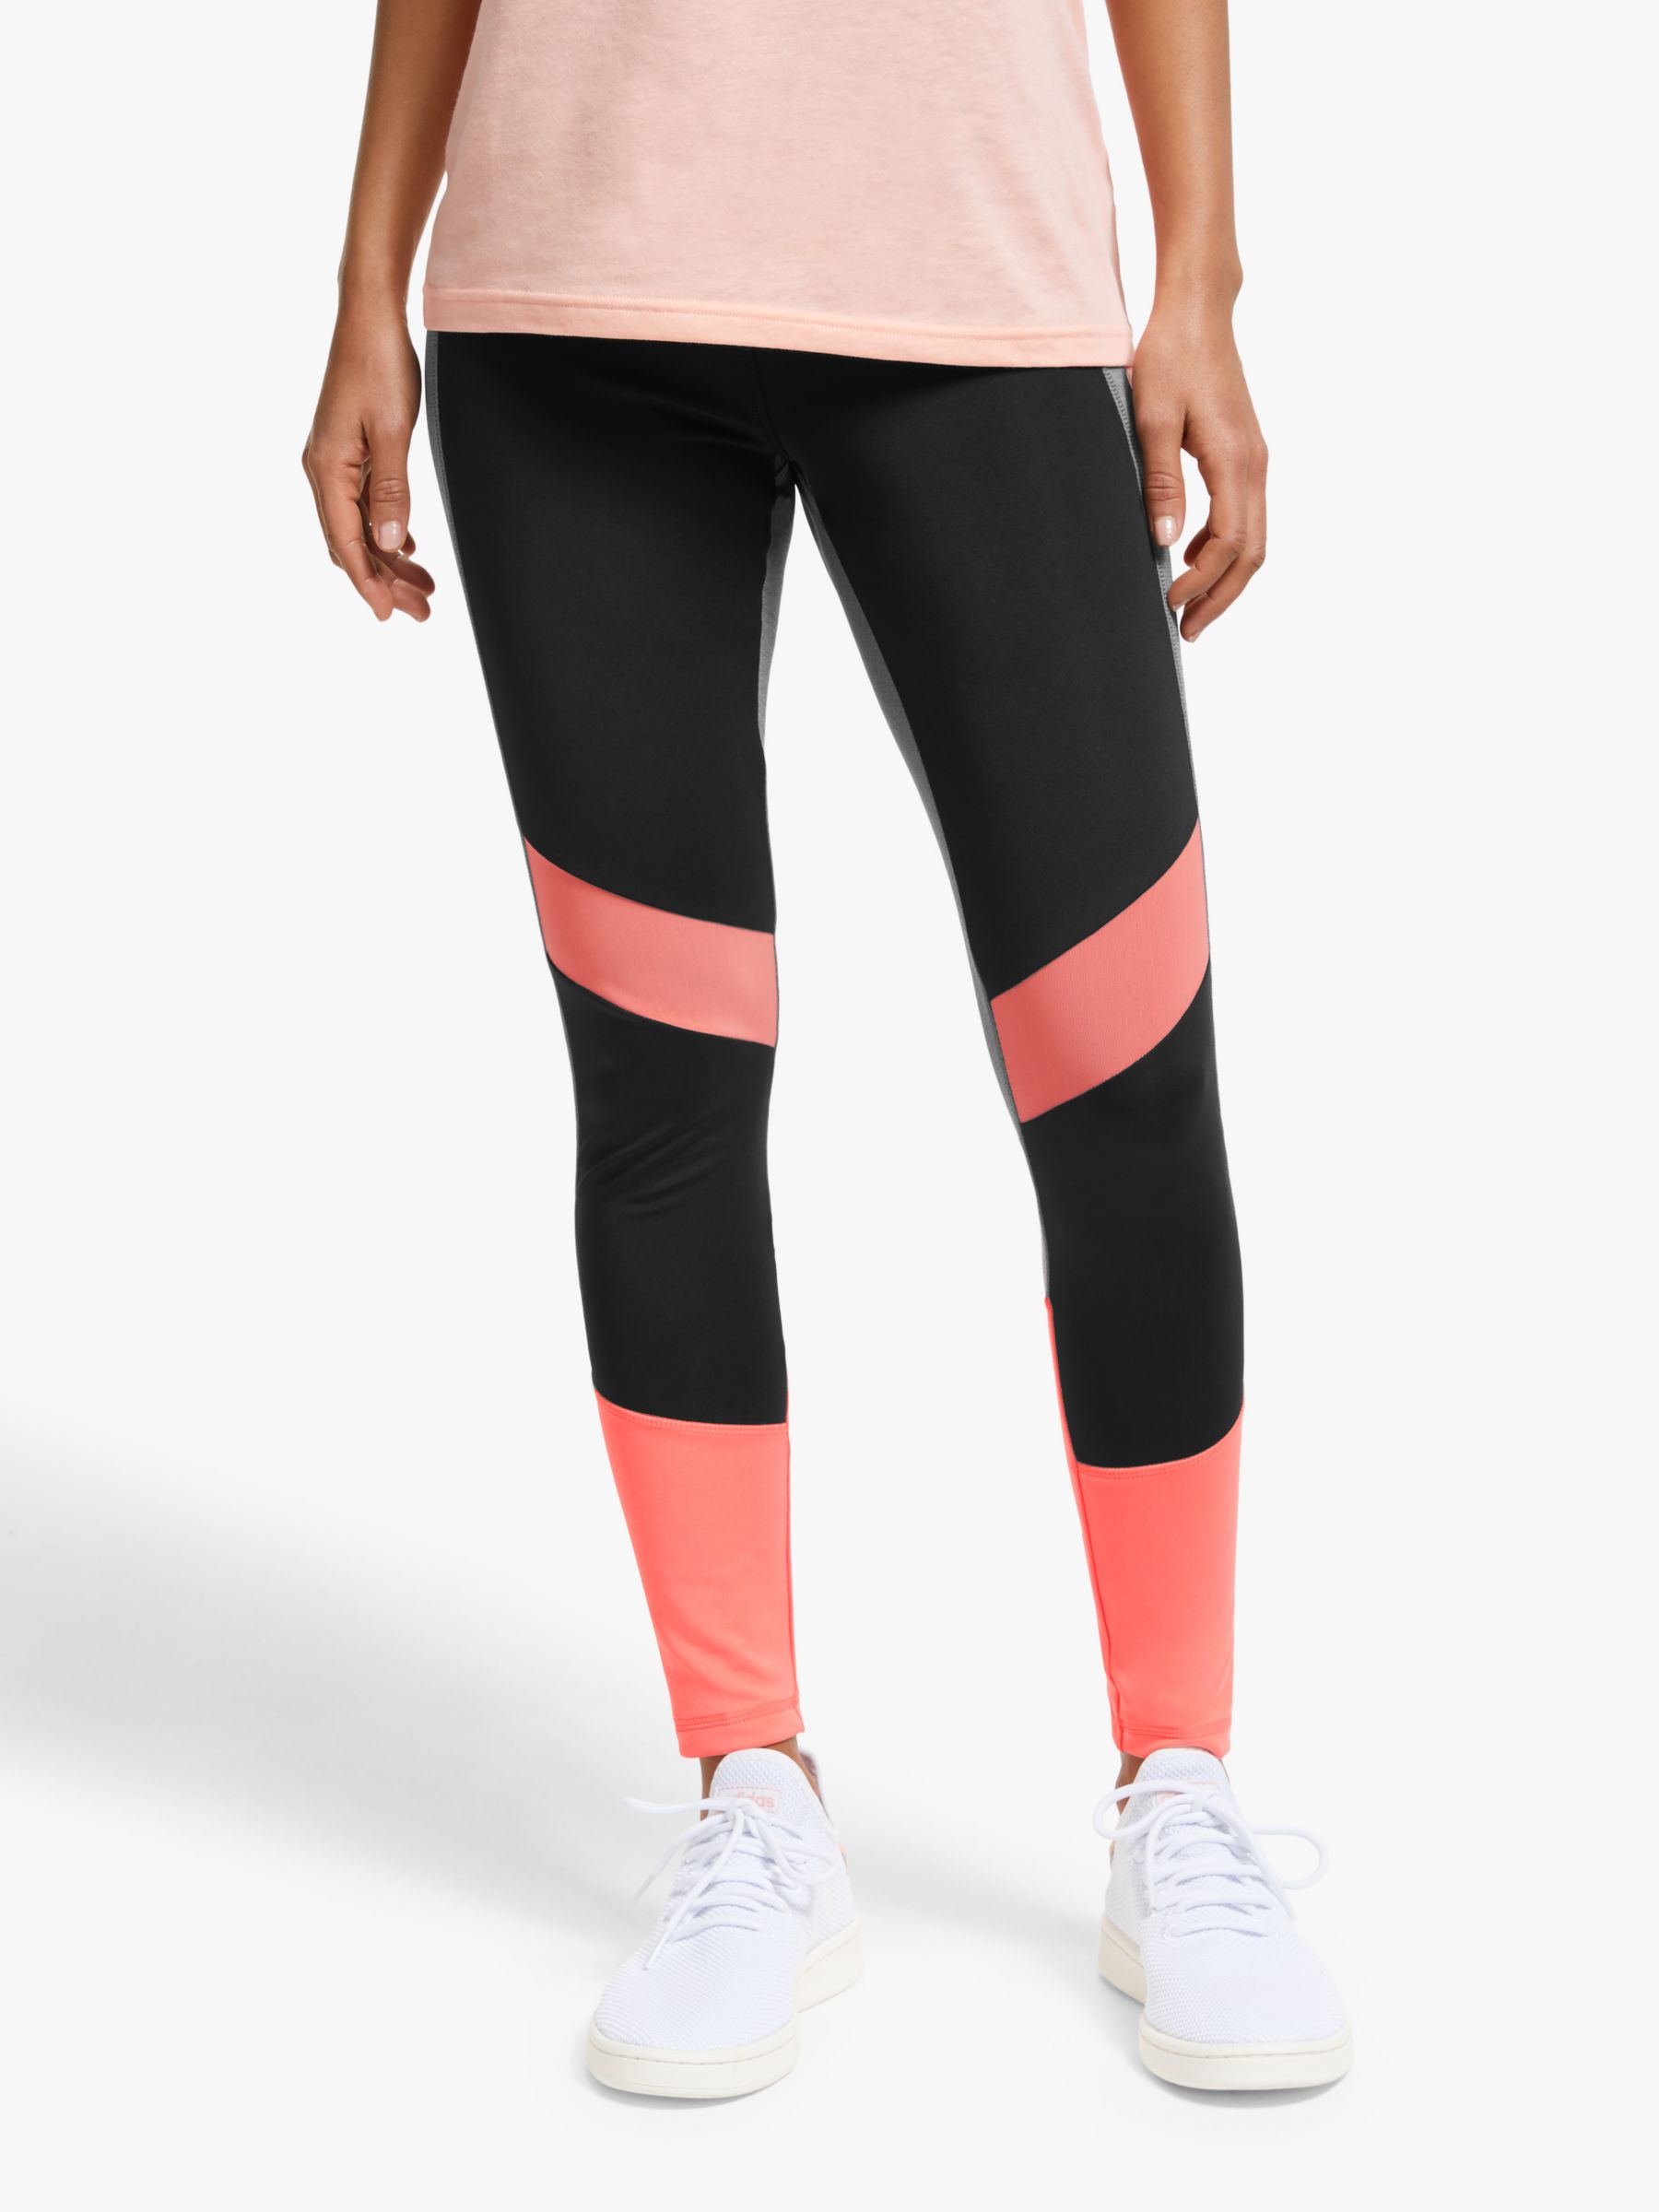 adidas designed 2 move leggings